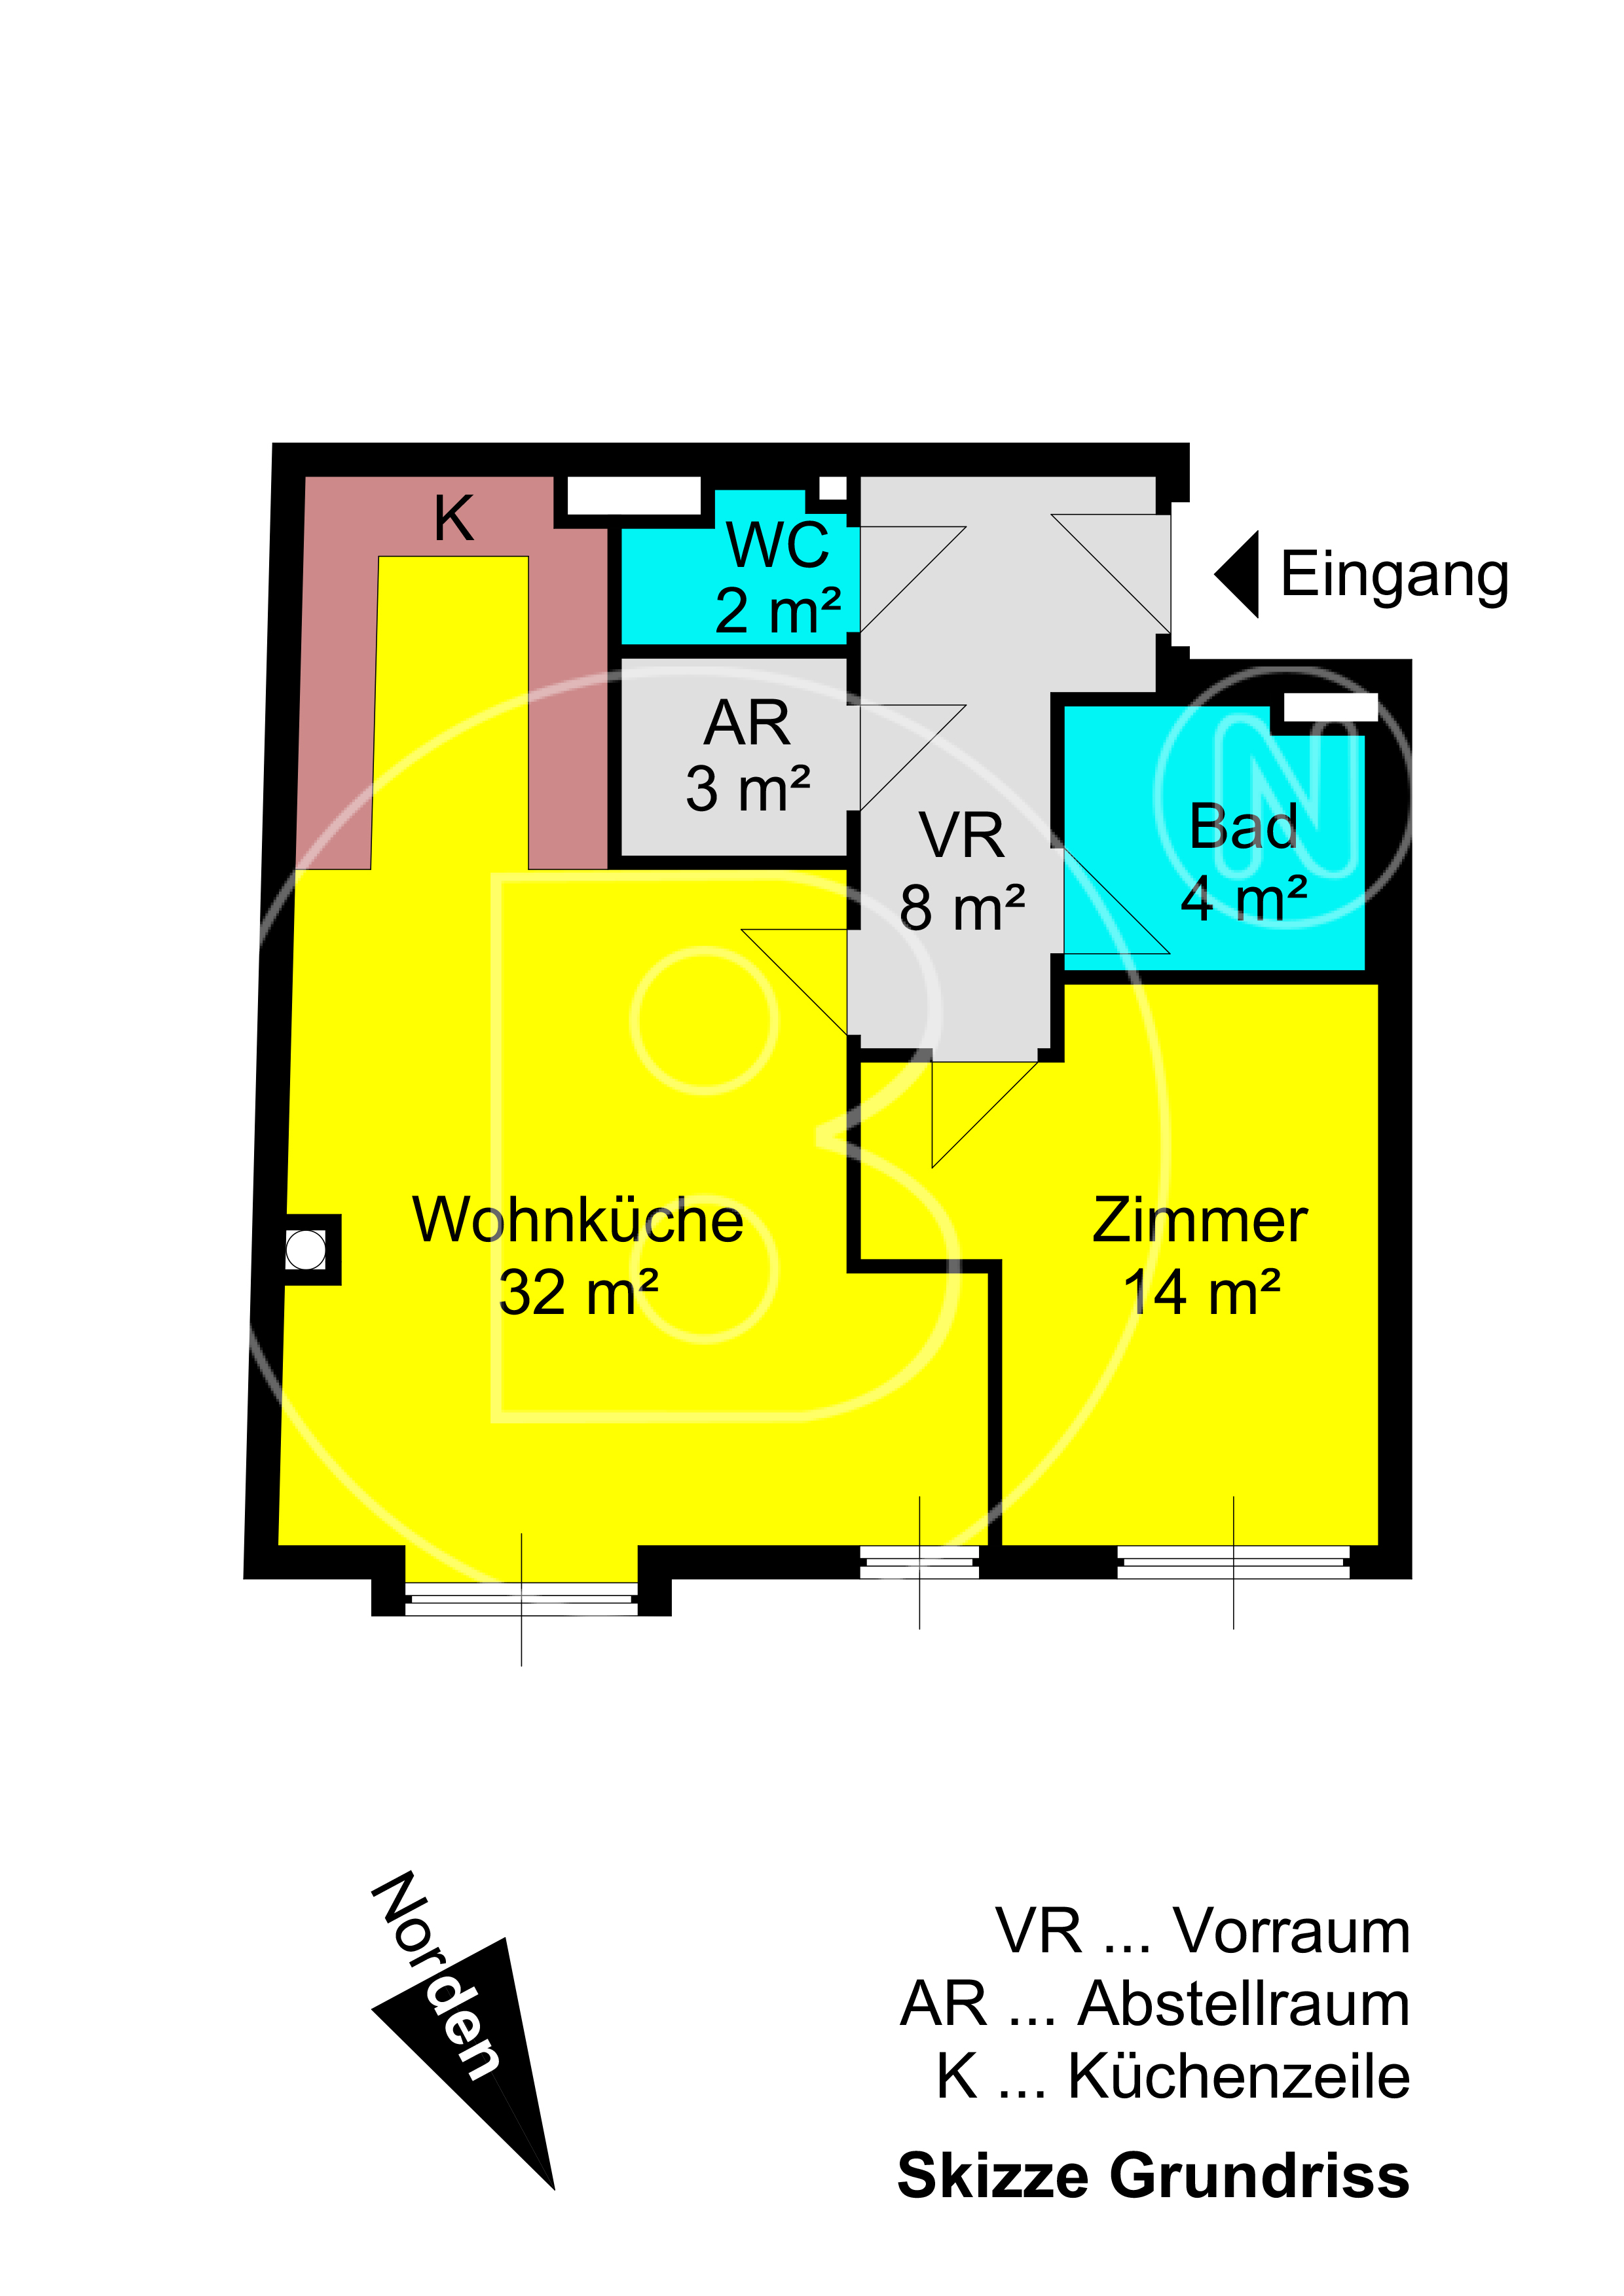 GRUNDRISS - Moderne 2-Zimmer-Wohnung in guter Lage!